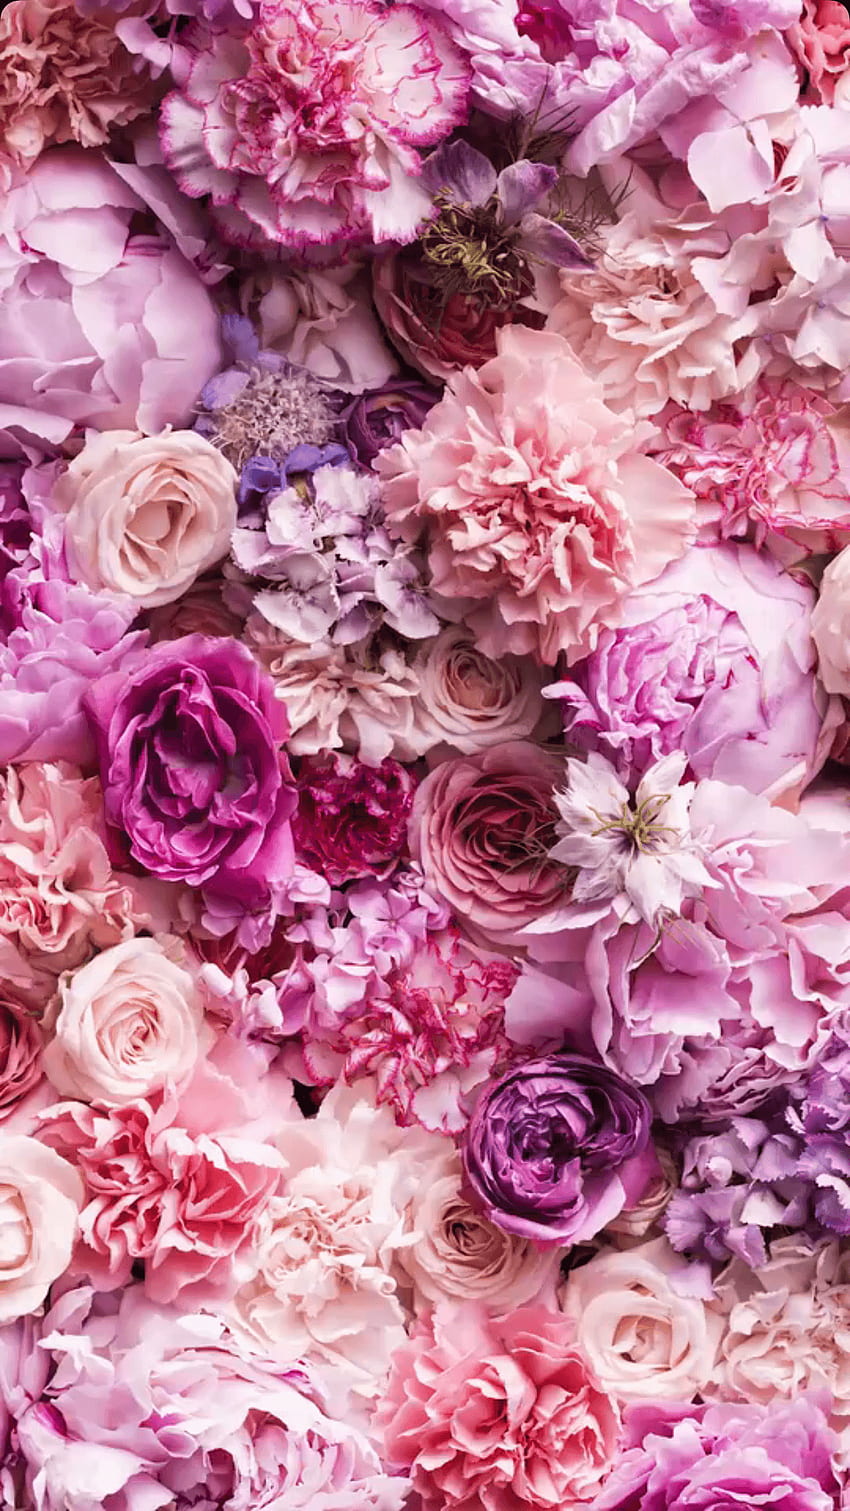 Hoa cổ điển: Cùng hòa mình vào không gian lãng mạn và đậm chất hoài cổ với những bức ảnh về những loại hoa cổ điển. Chúng ta sẽ được tận hưởng sự thanh lịch và tính độc đáo của những bông hoa này, và rơi vào mê hoặc của những thiên hạnh trầm lặng.